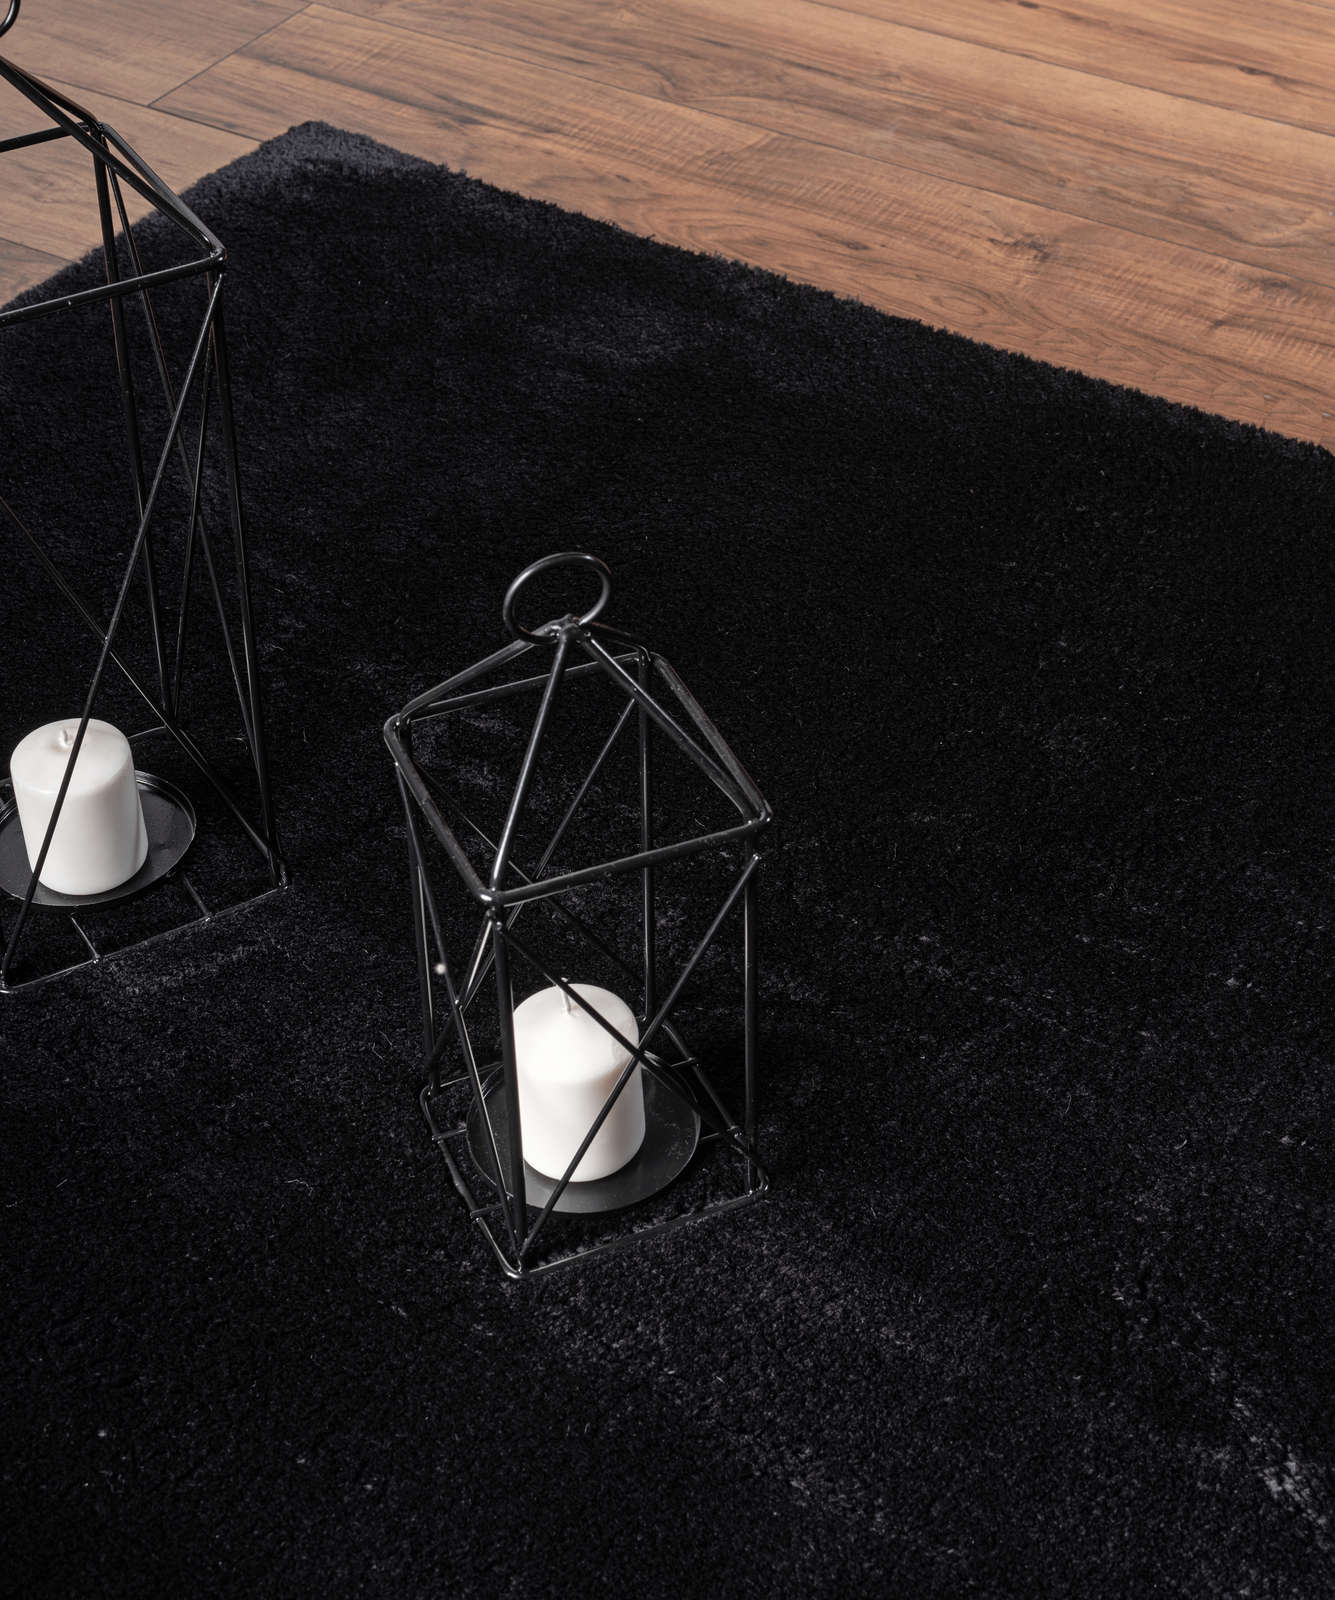             Fluweelzacht hoogpolig tapijt in zwart - 150 x 80 cm
        